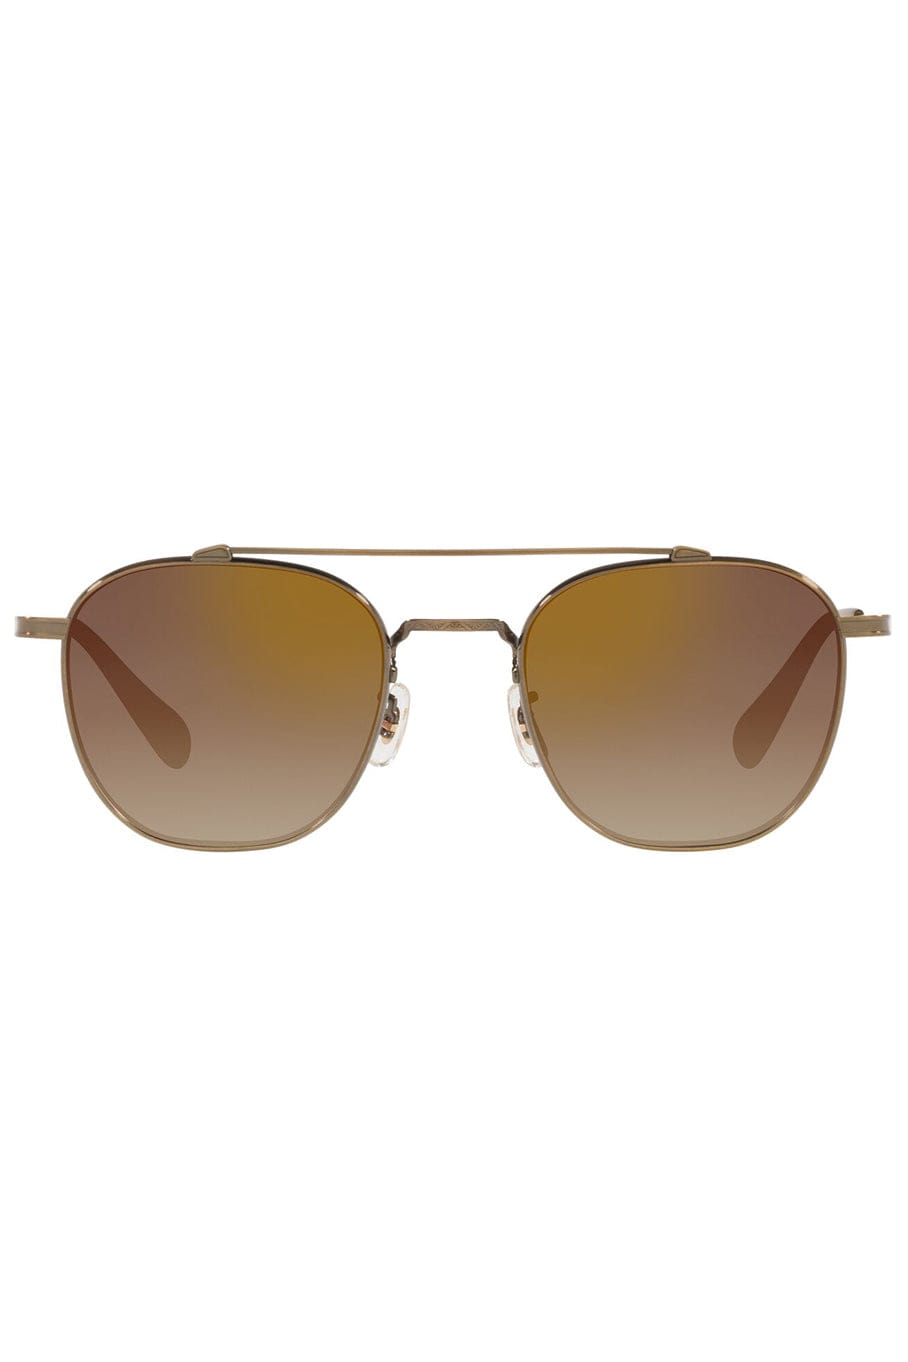 OLIVER PEOPLES-Mandeville Sunglasses - Gold-GOLD BROWN